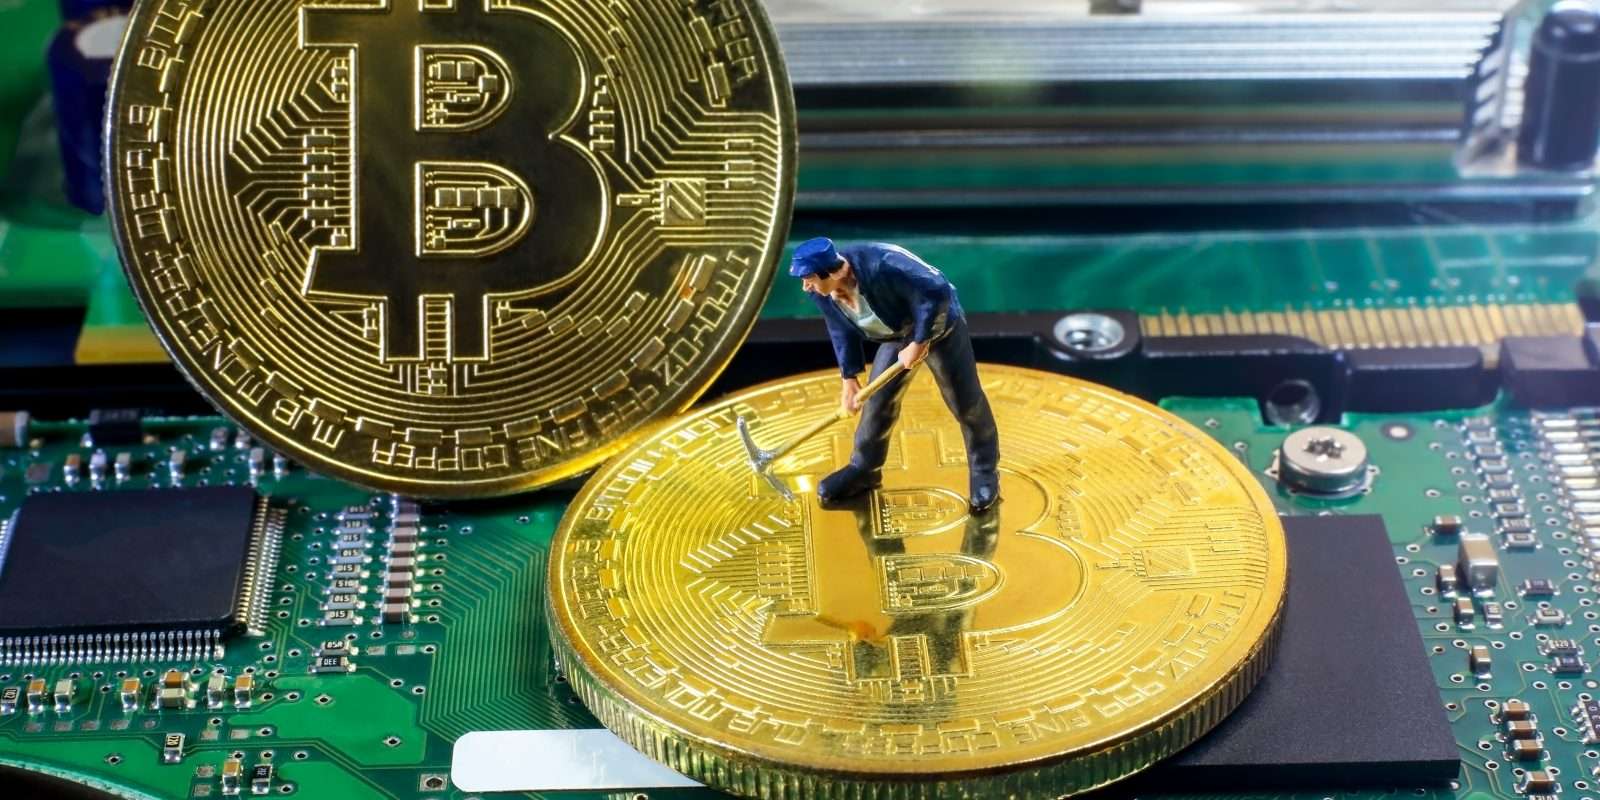 es legal minar bitcoins en estados unidos